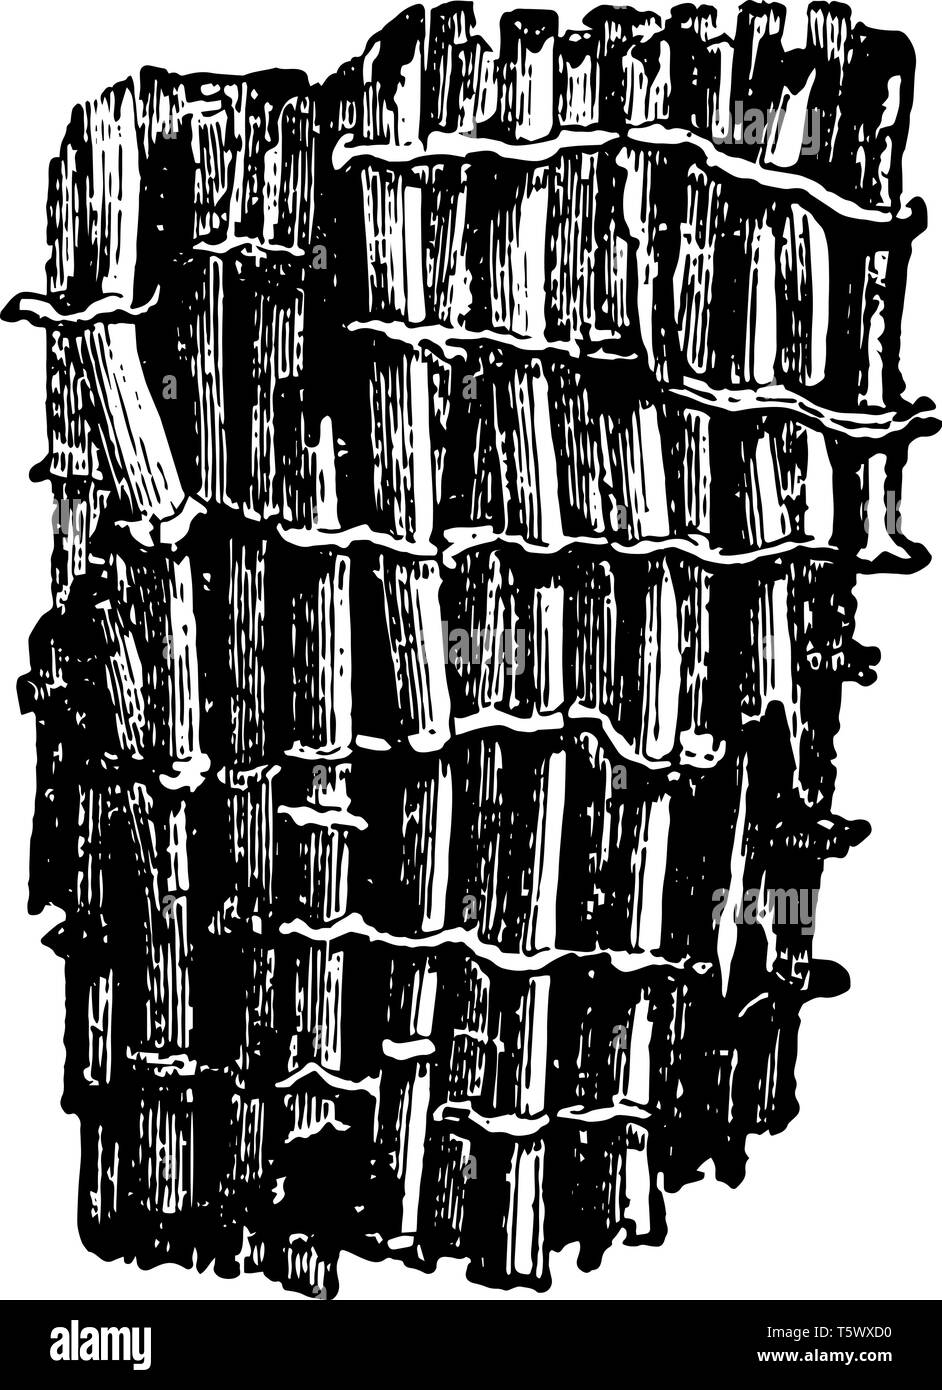 Vergrößerte Teil der Tubipora Musica, die durch die Kombination von unterschiedlichen vintage Strichzeichnung oder Gravur Abbildung gebildet wird. Stock Vektor